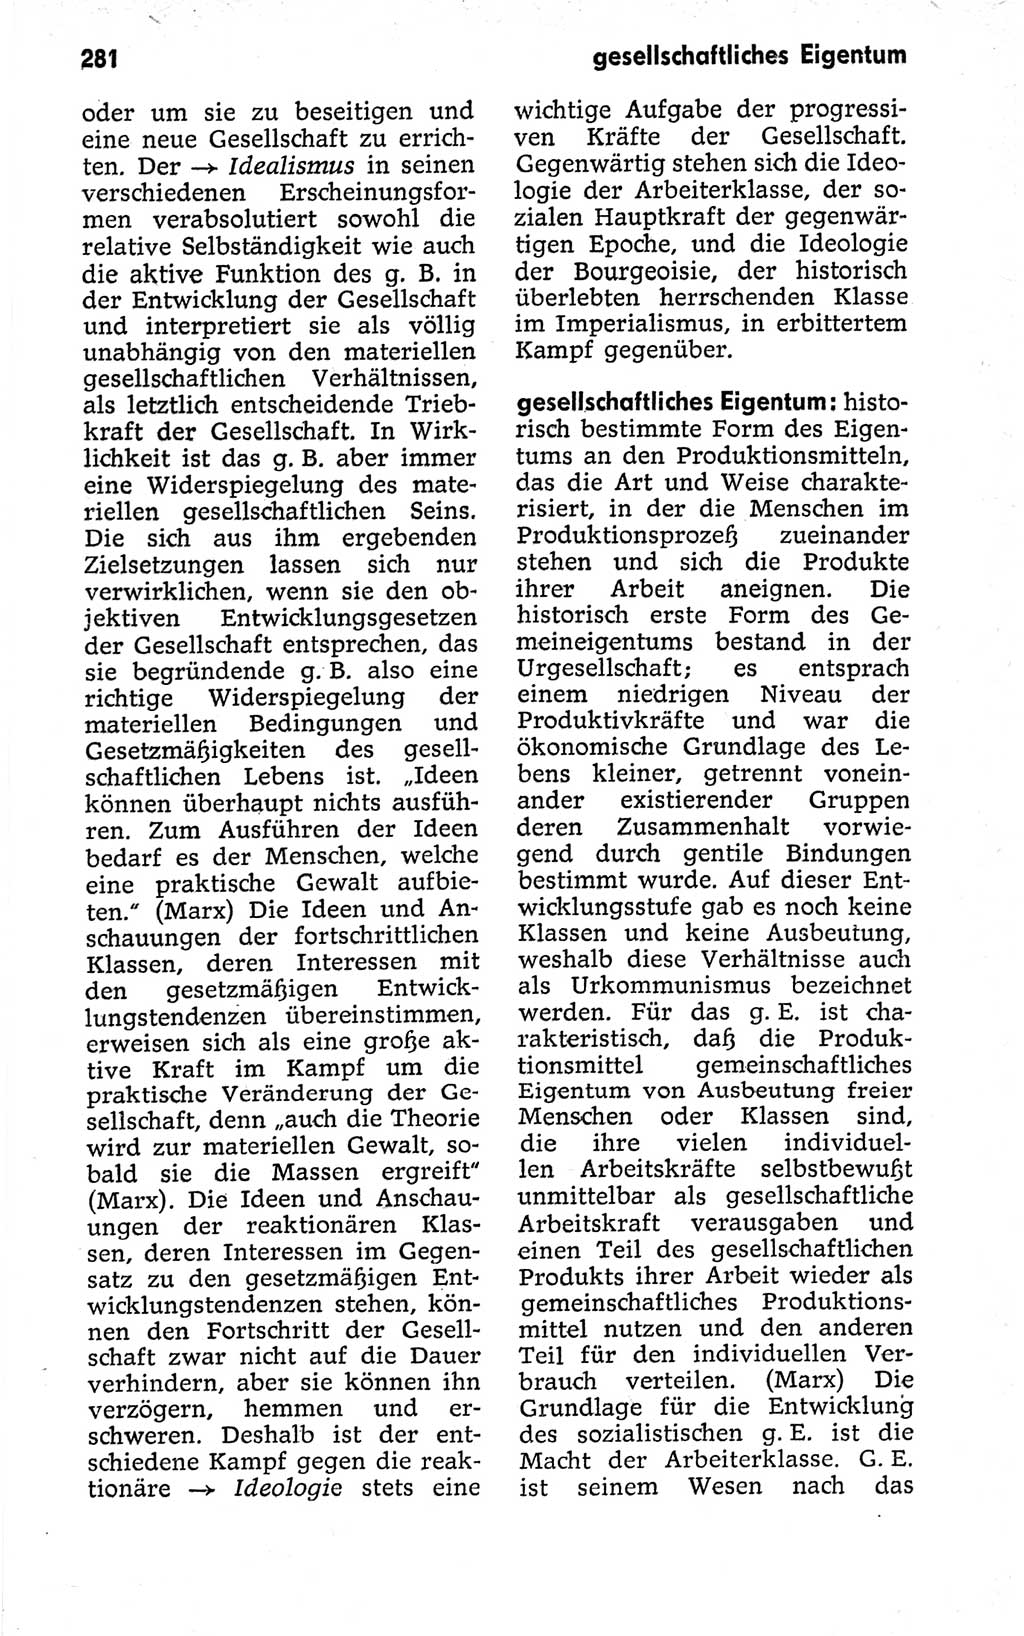 Kleines politisches Wörterbuch [Deutsche Demokratische Republik (DDR)] 1973, Seite 281 (Kl. pol. Wb. DDR 1973, S. 281)